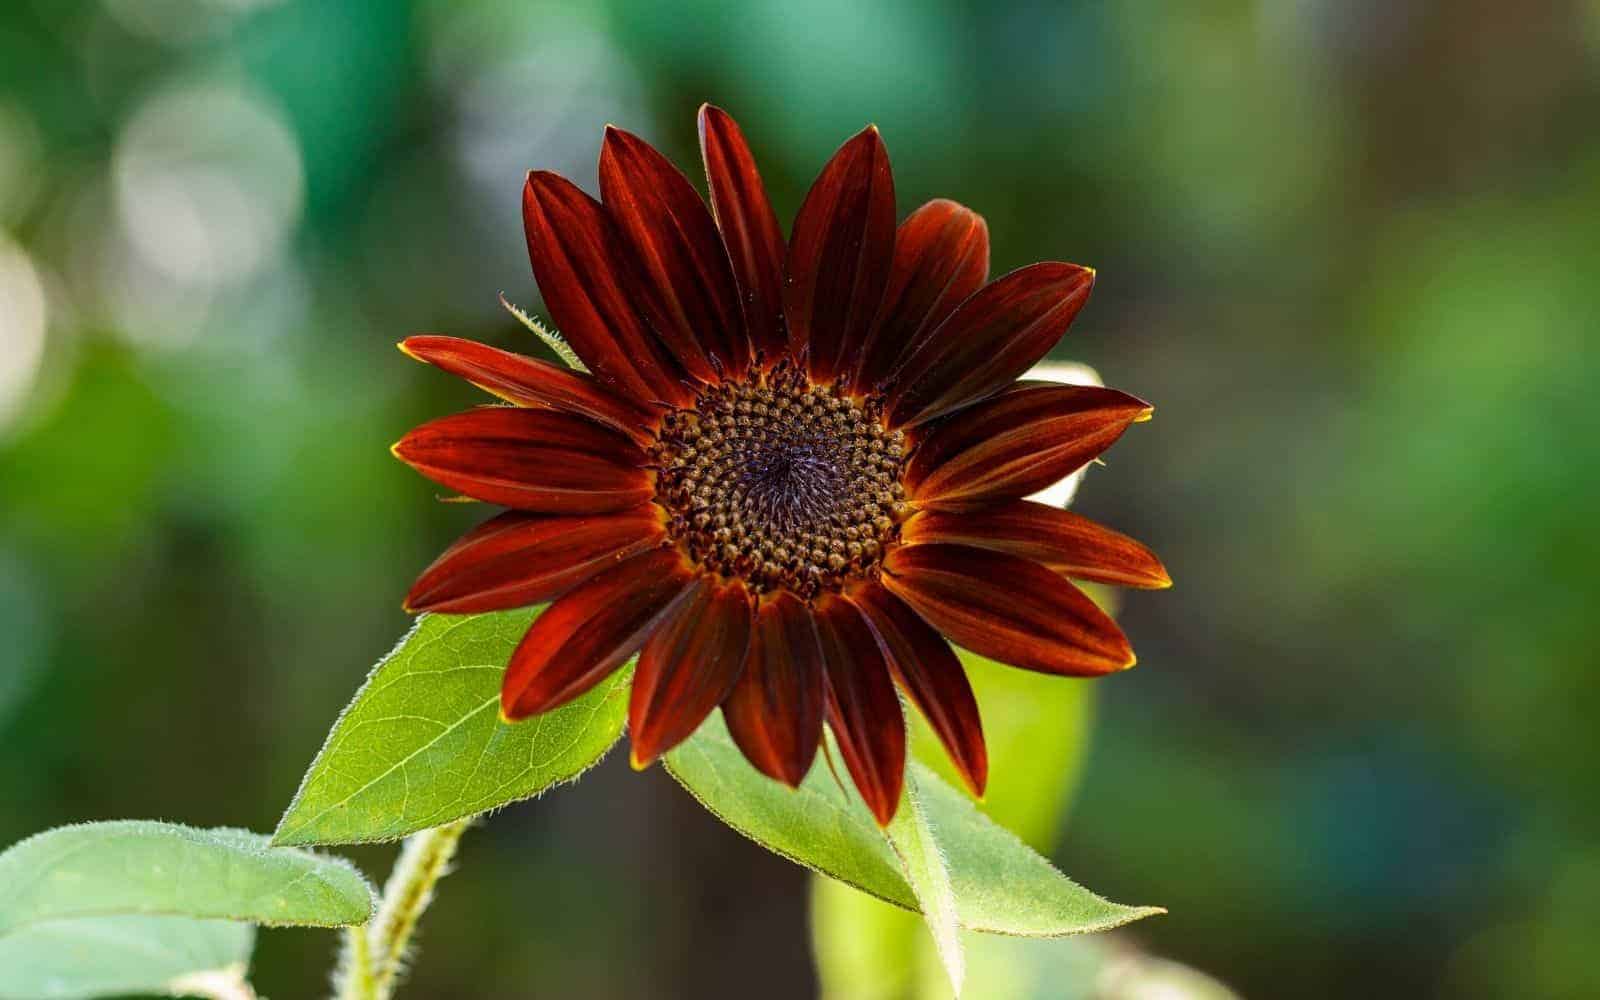 Velvet queen sunflower